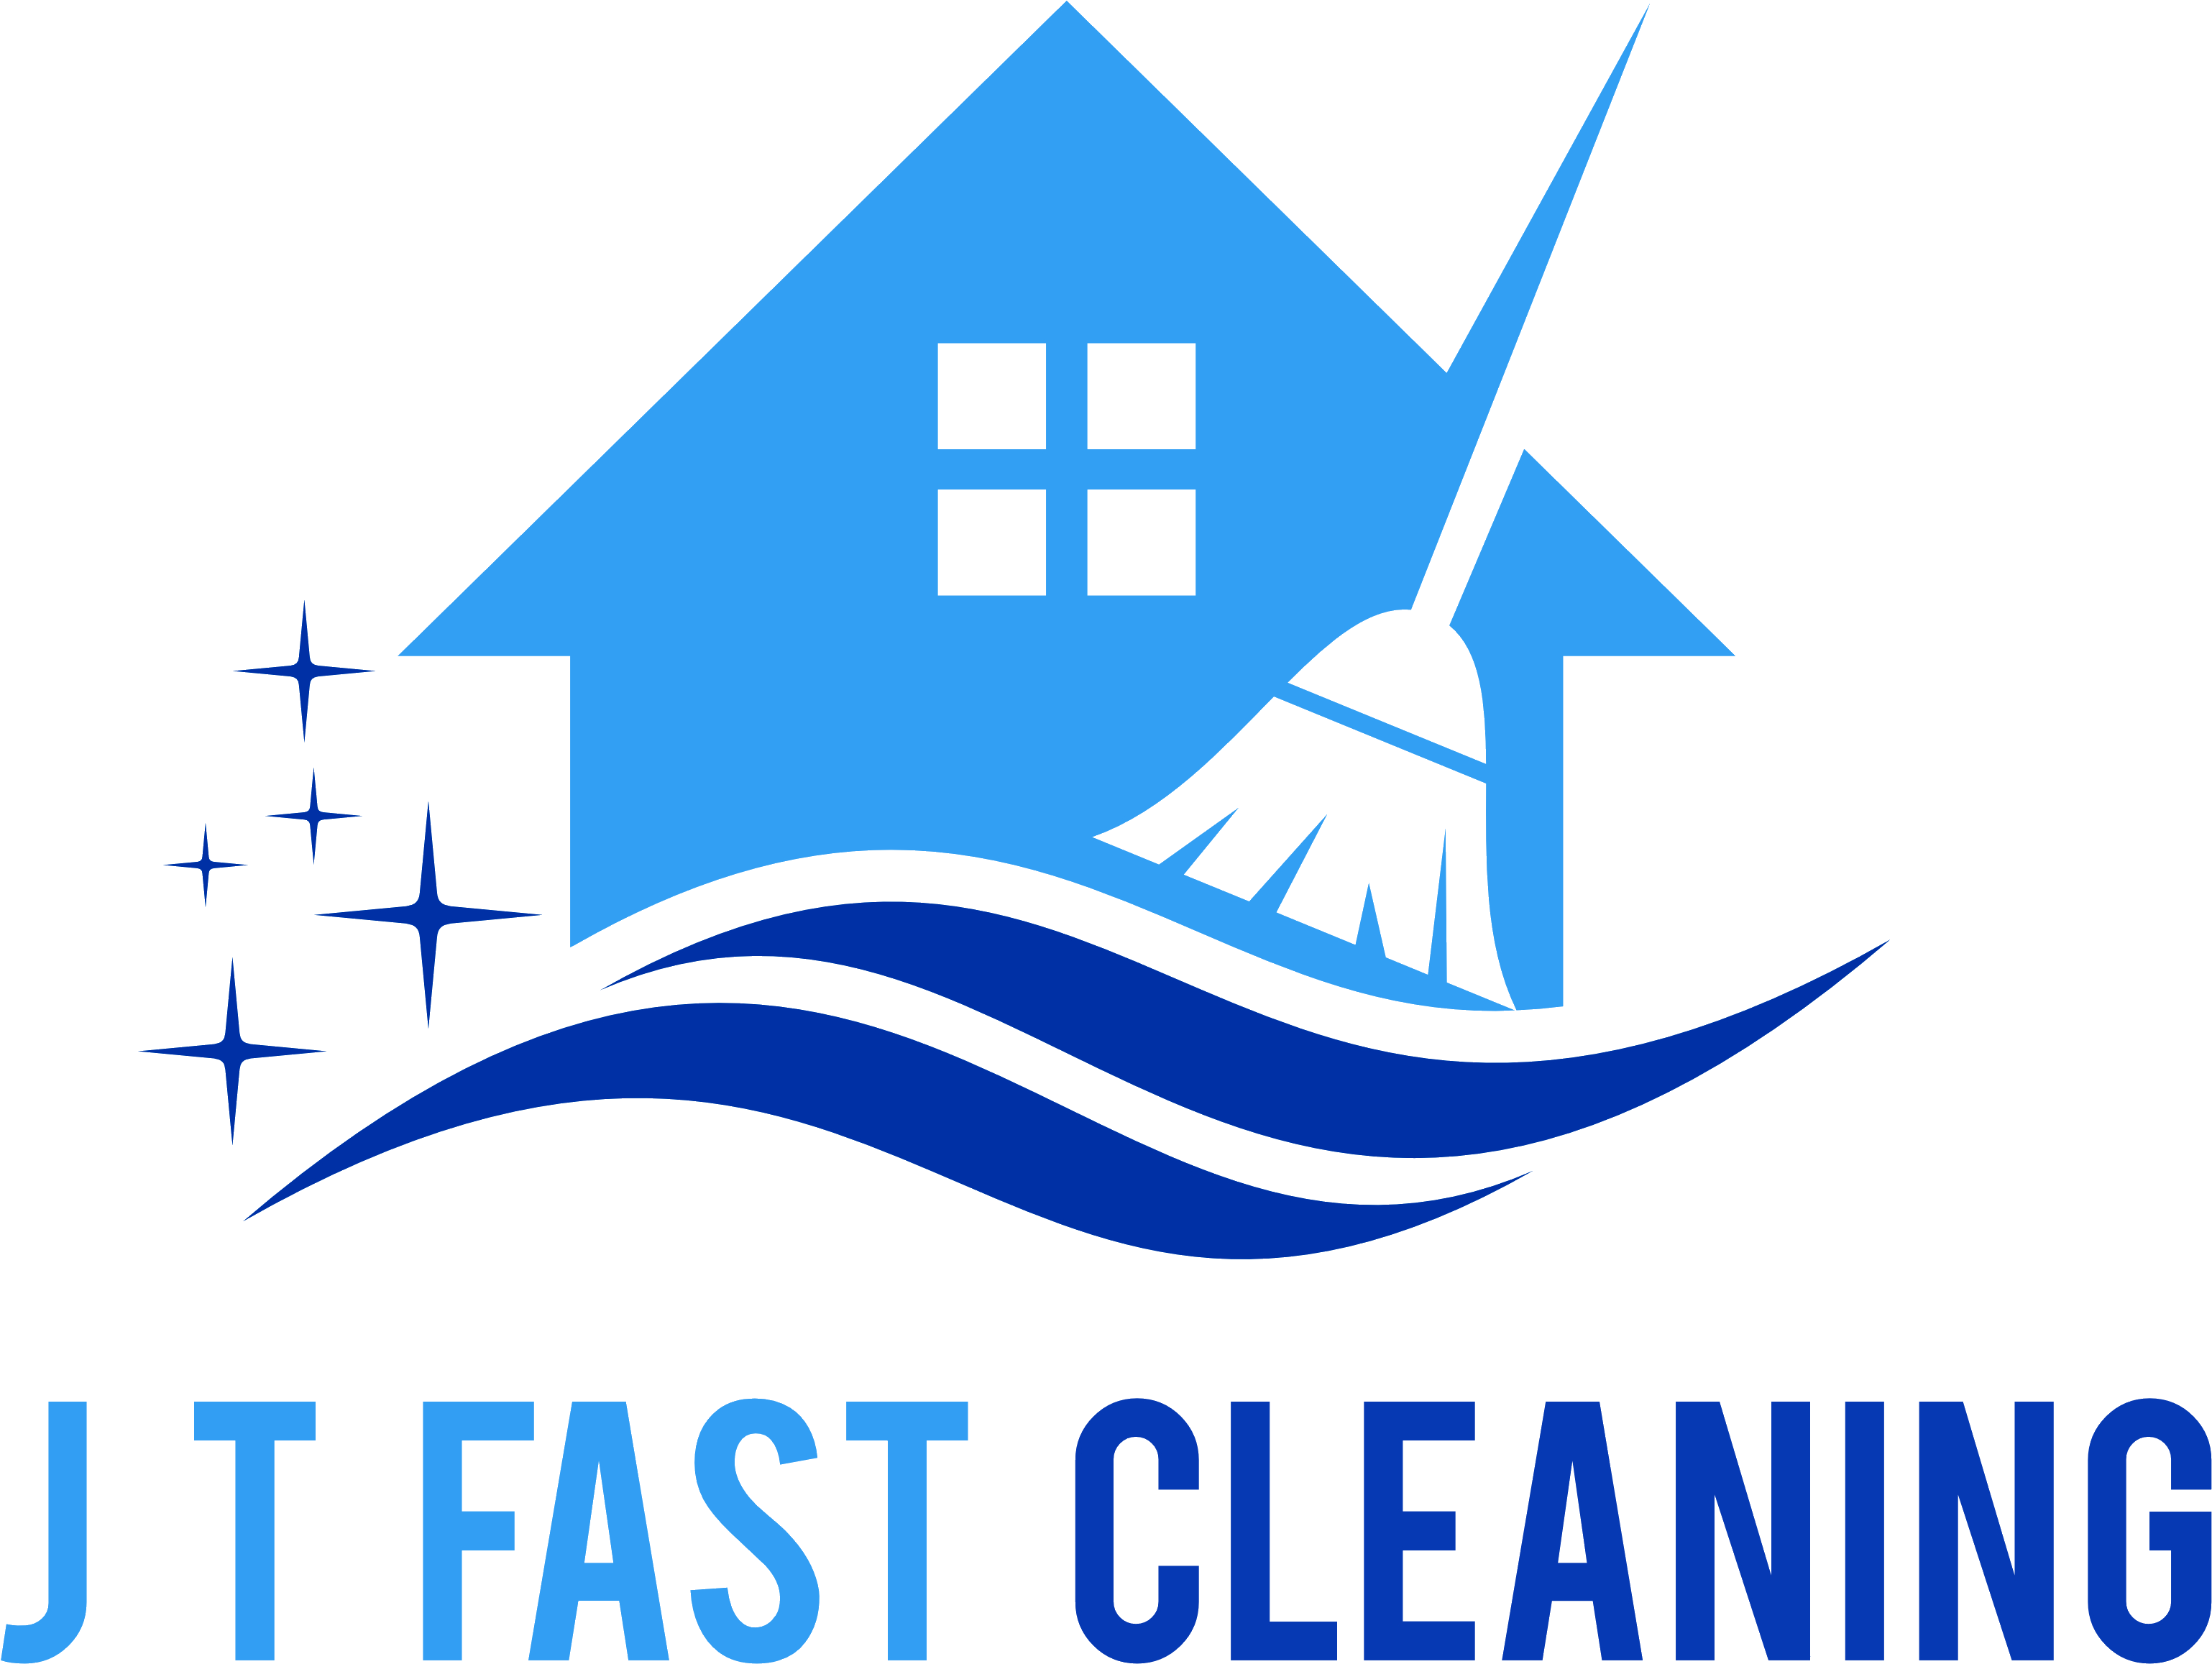 J.t. Fast Cleaning Ltd (3221x2463)